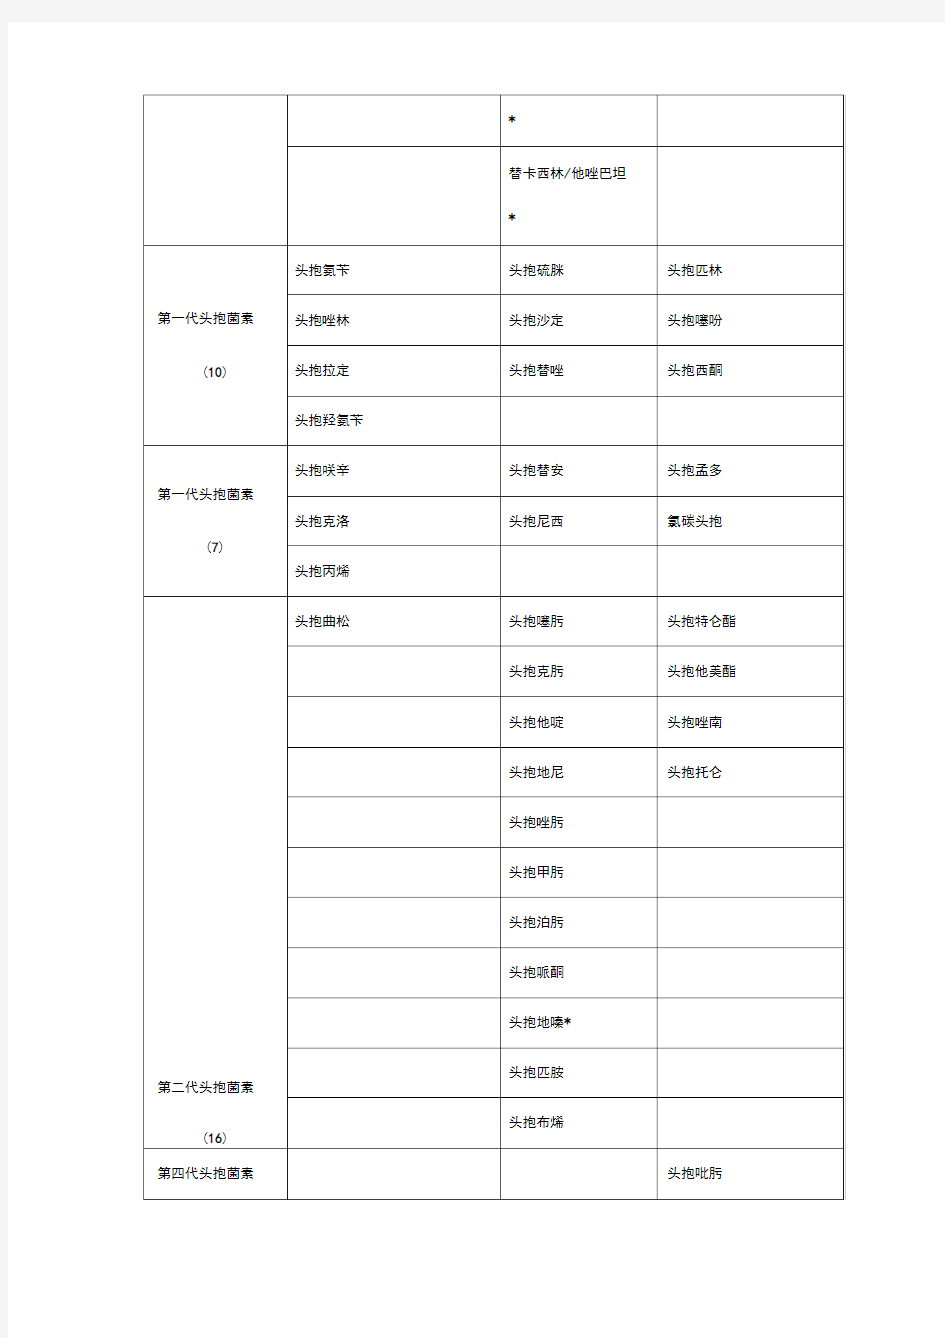 江苏省抗菌药物临床应用分级管理目录(2019年版)